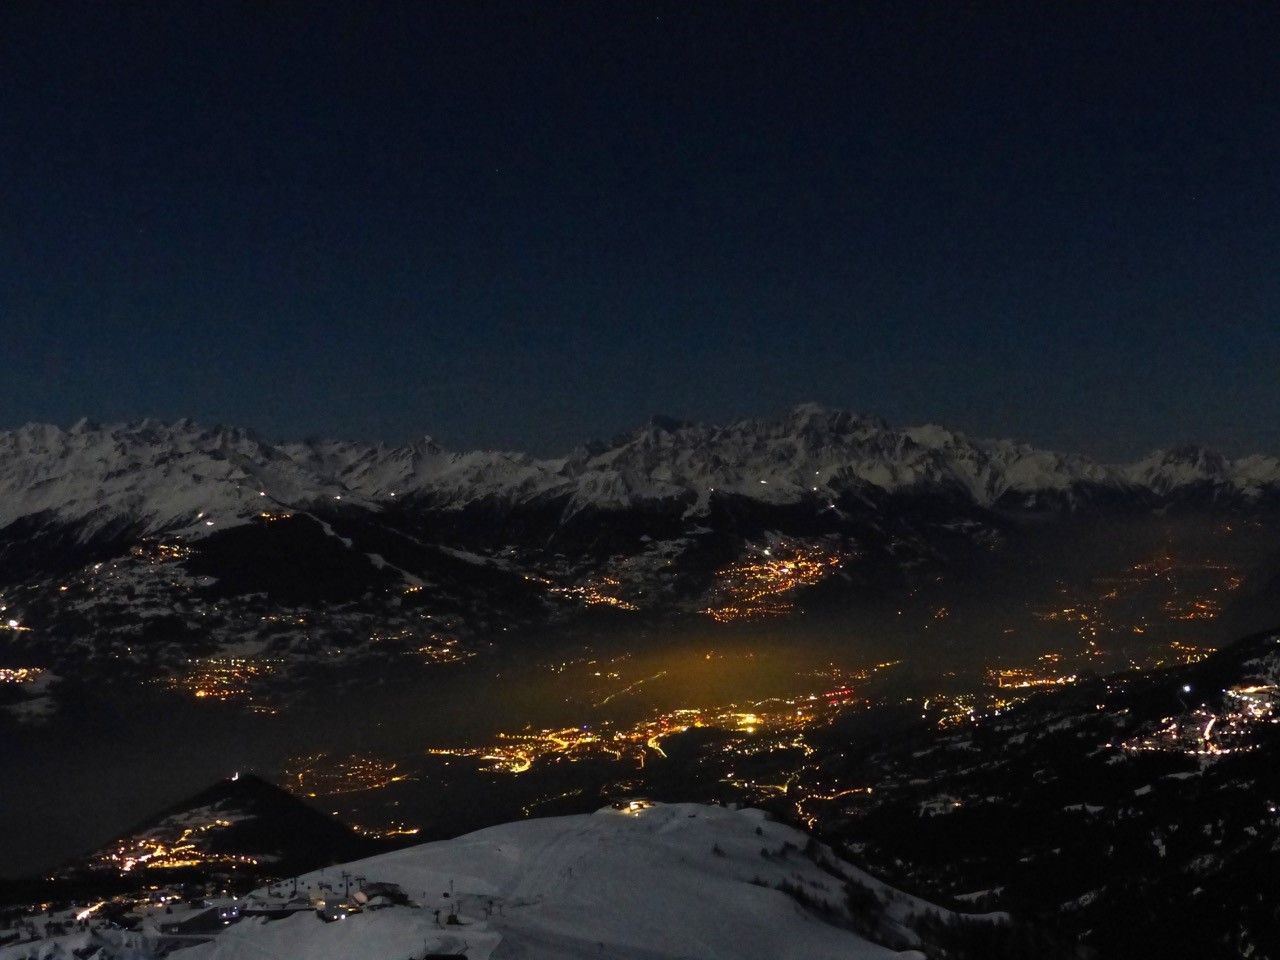 Vue de Bellalui, ce cliché révèle l'intensité de l'éclairage nocturne sur le Valais central.